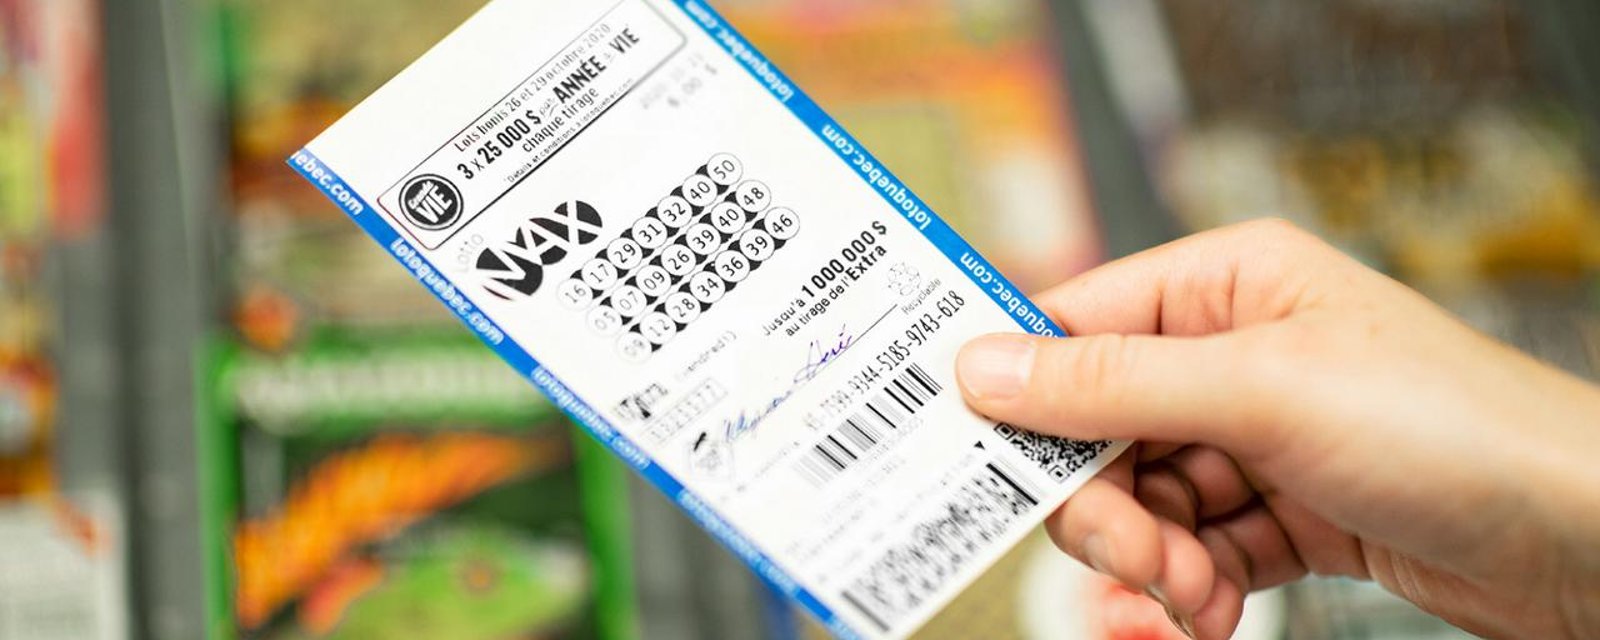 Un gros lot de 60 millions de dollars pour le prochain gagnant du Lotto Max cette semaine.